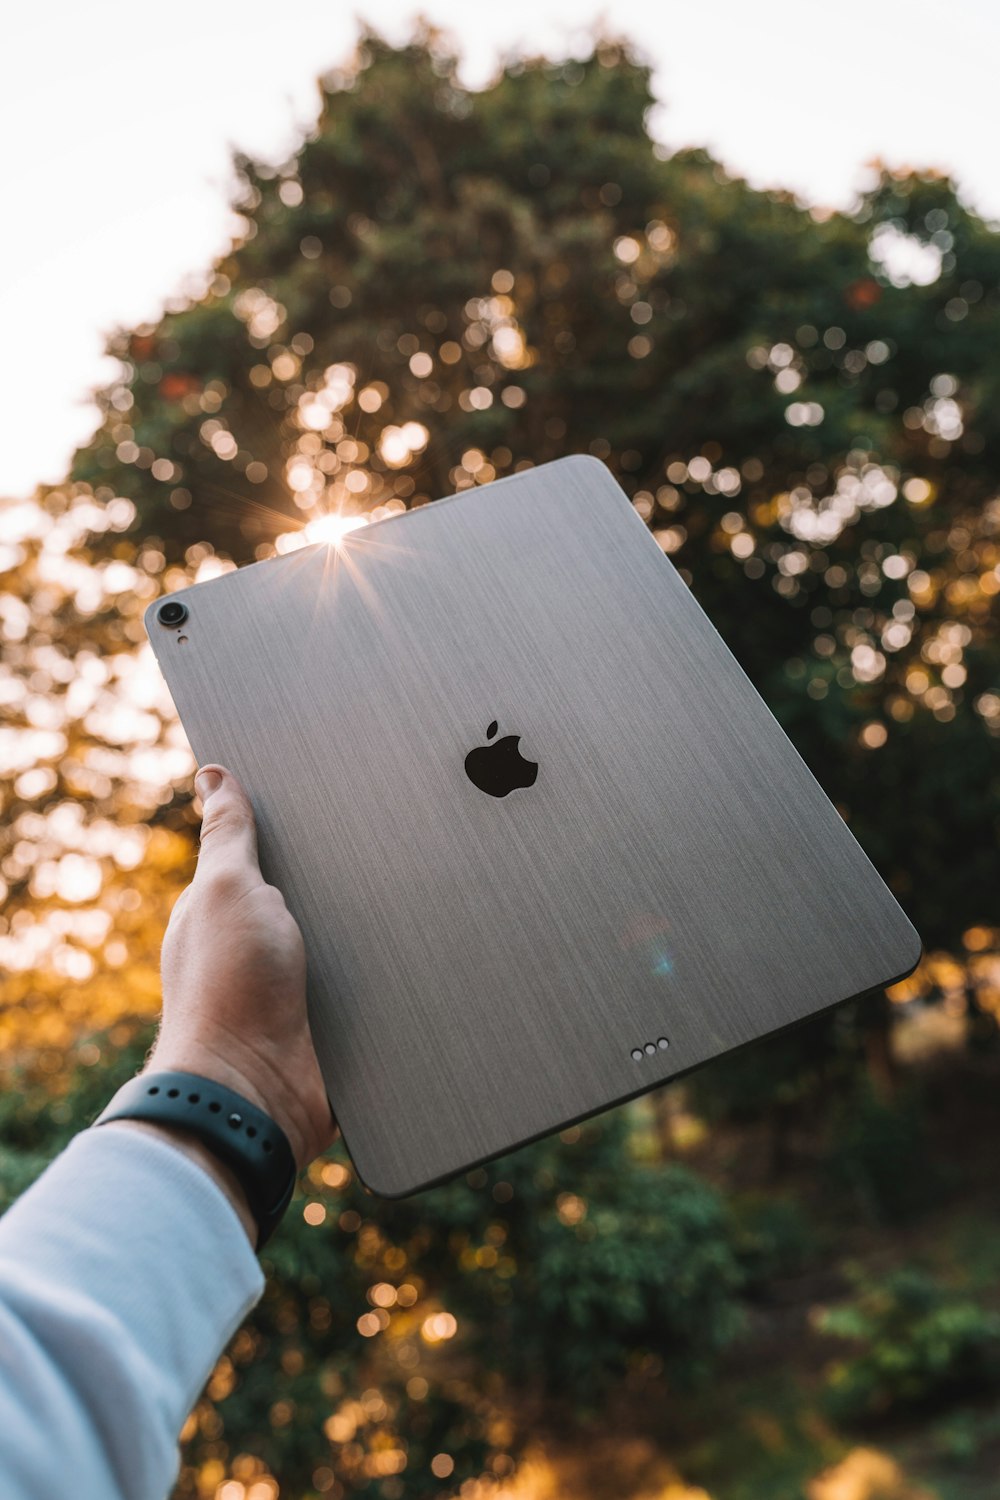 Persona in possesso di un MacBook Apple d'argento